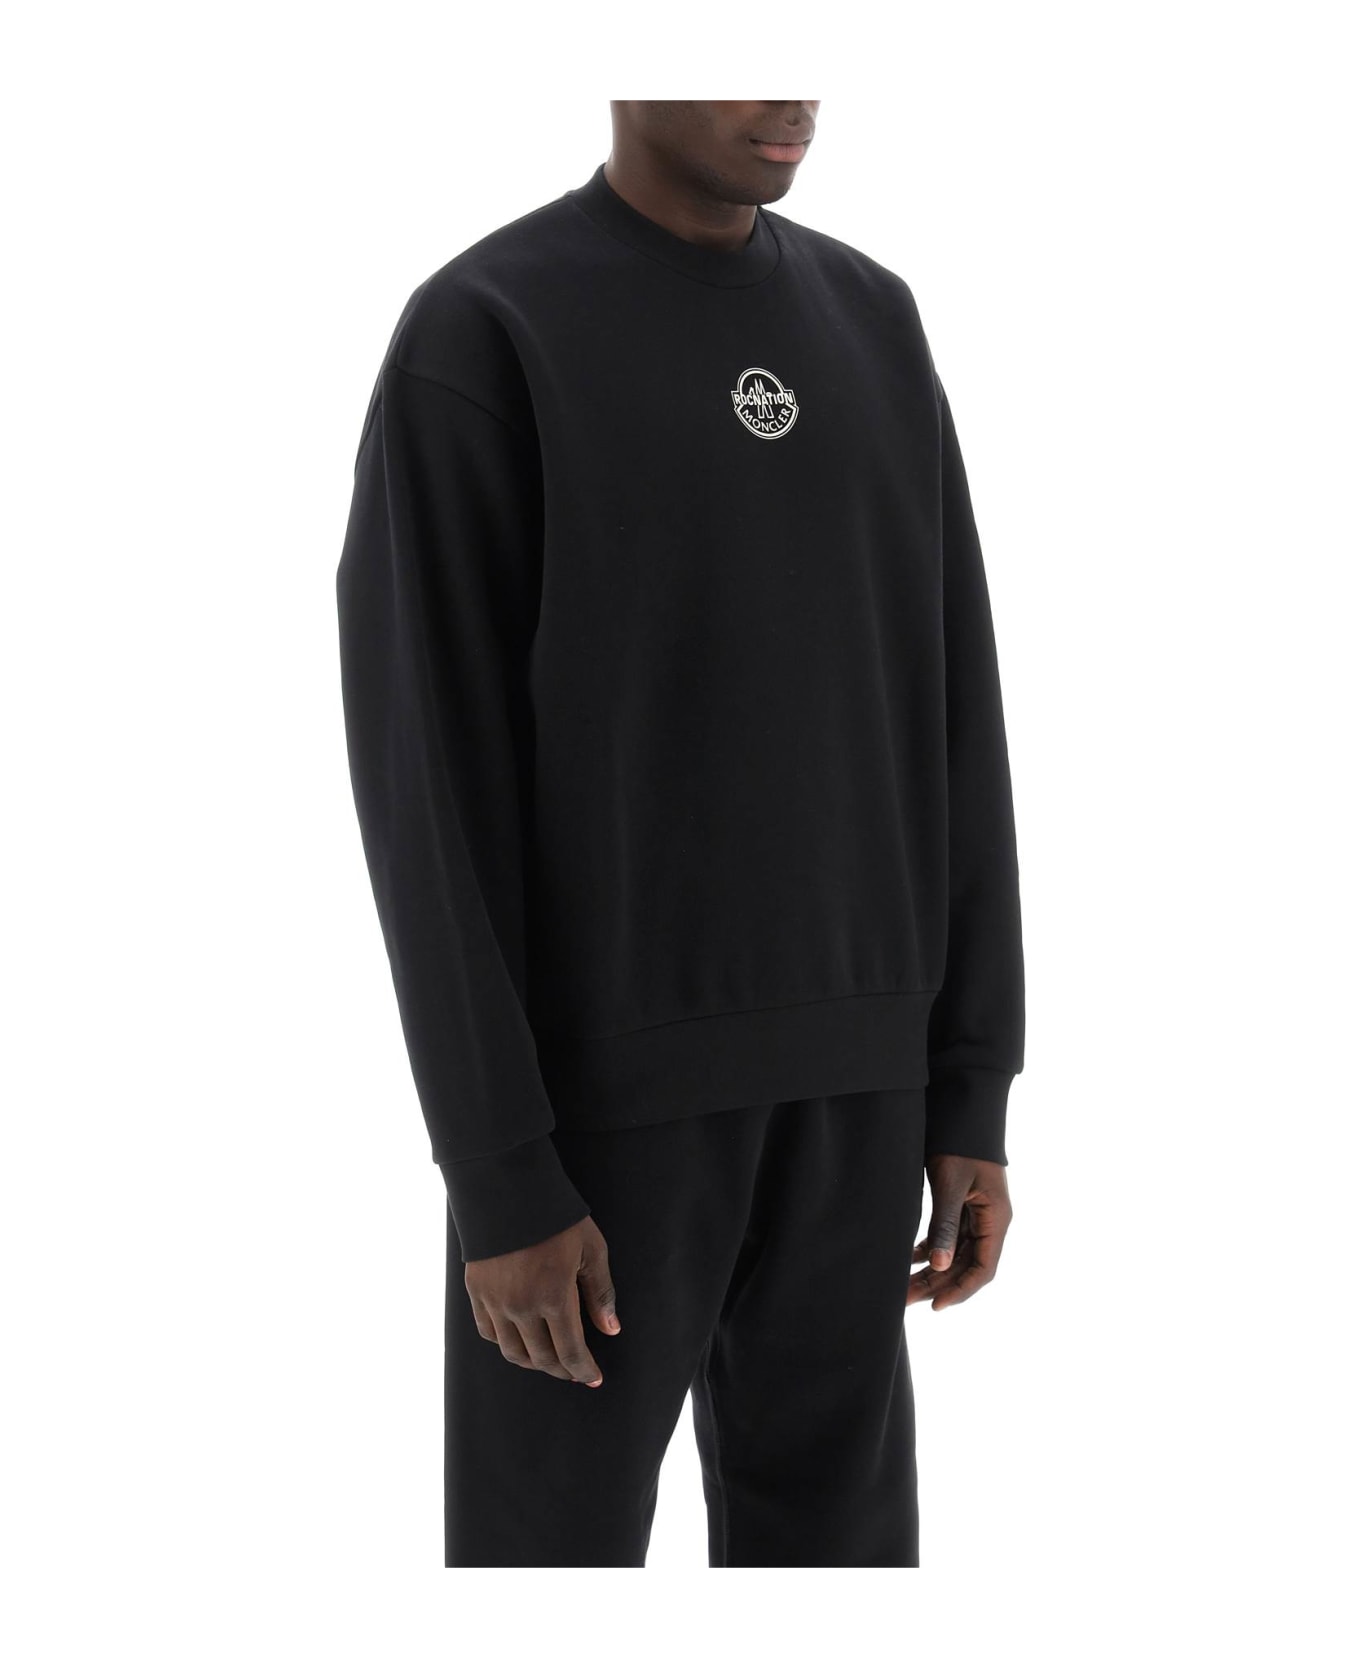 Moncler Genius Logo Sweatshirt - Black